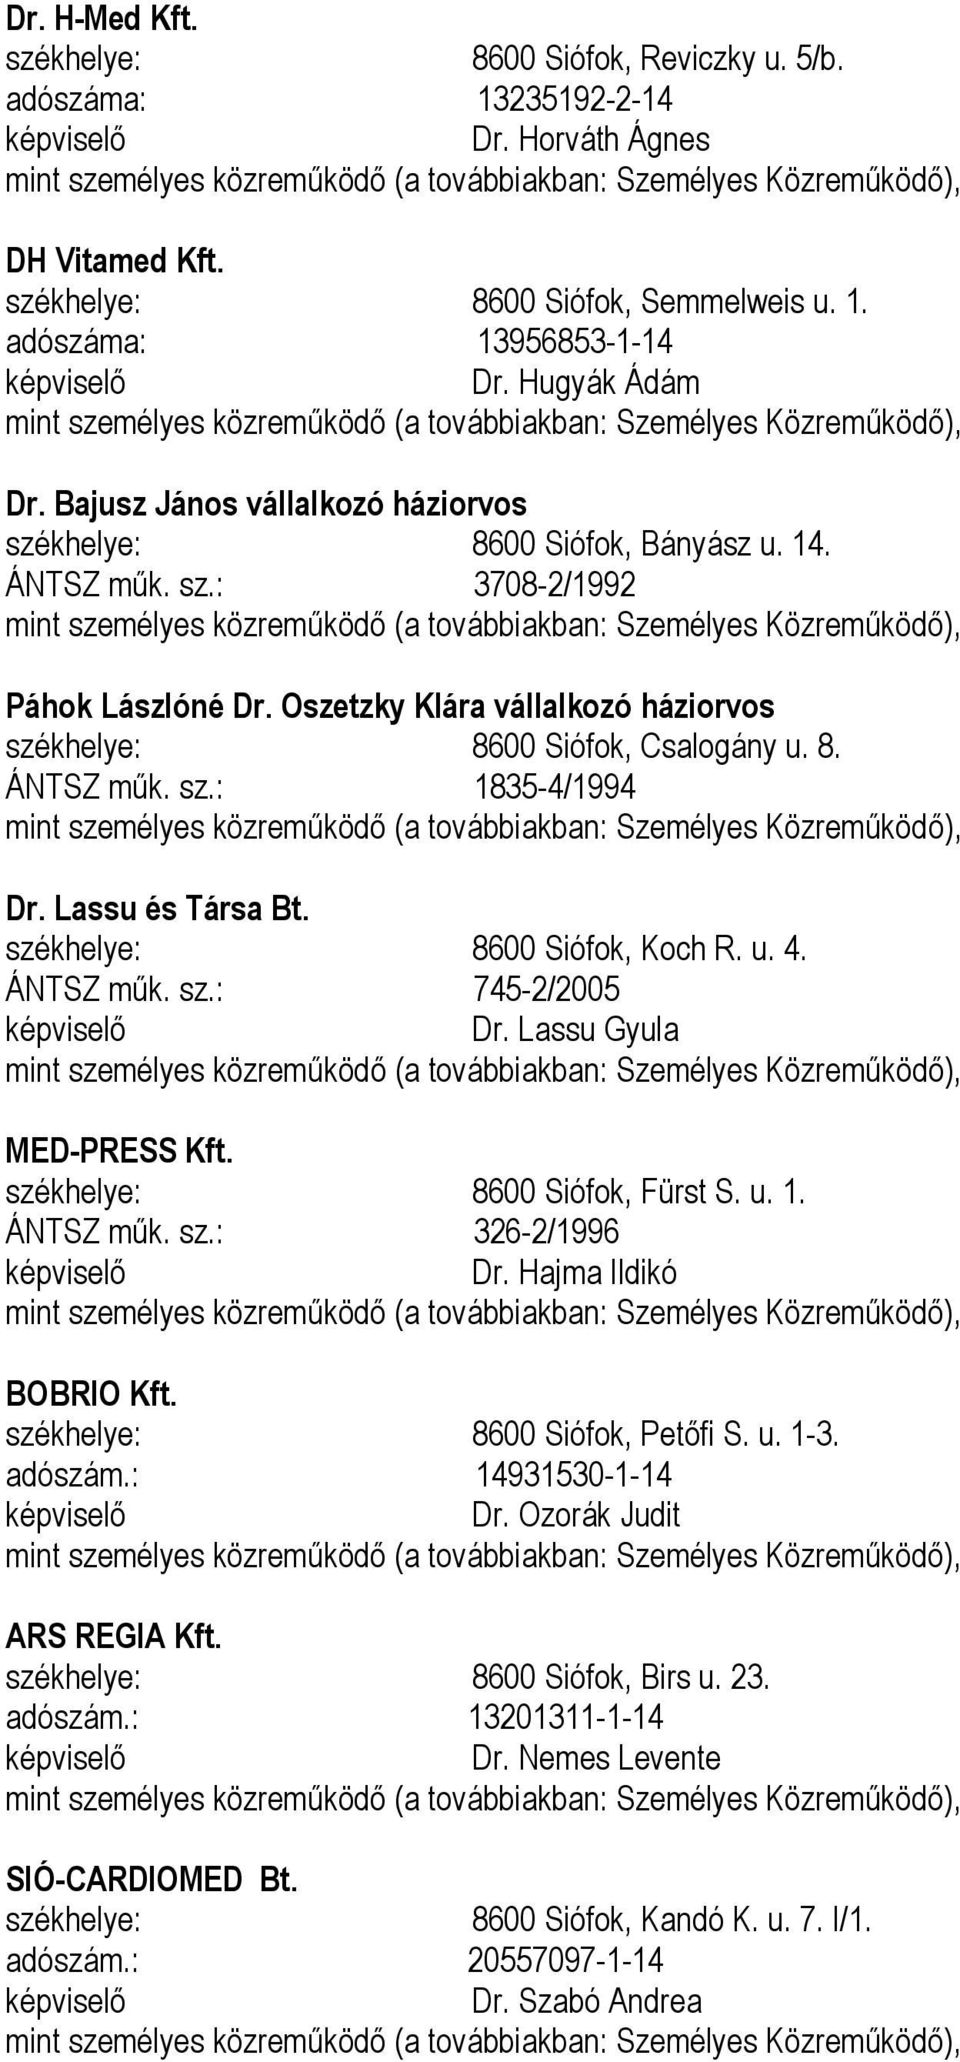 Oszetzky Klára vállalkozó háziorvos székhelye: 8600 Siófok, Csalogány u. 8. ÁNTSZ műk. sz.: 1835-4/1994 mint személyes közreműködő (a továbbiakban: ), Dr. Lassu és Társa Bt.